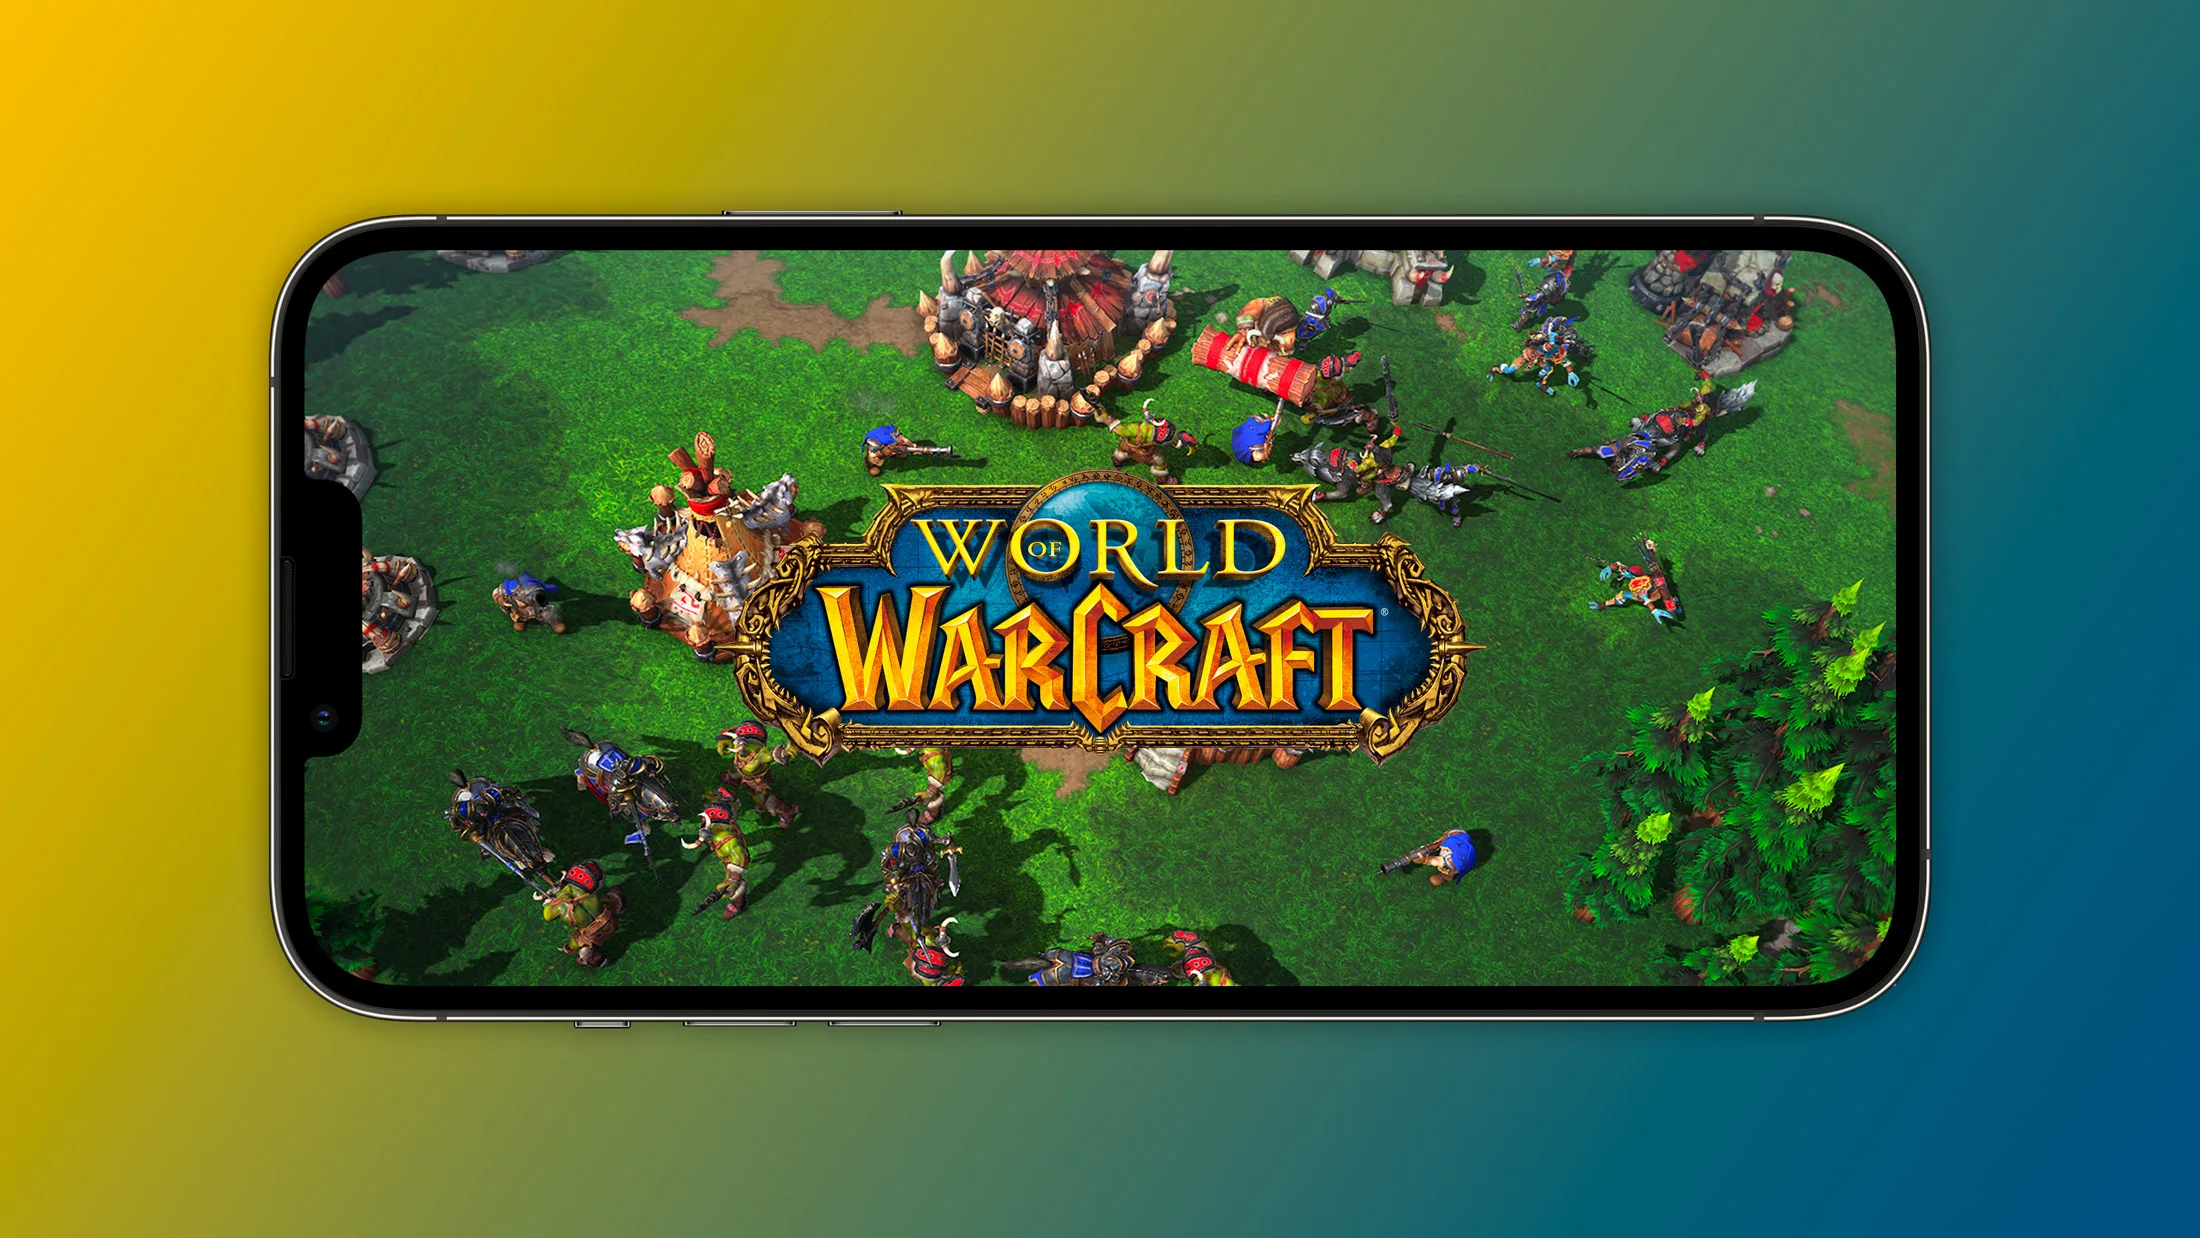 mobilna gra Warcraft zostanie zaprezentowana 3 maja